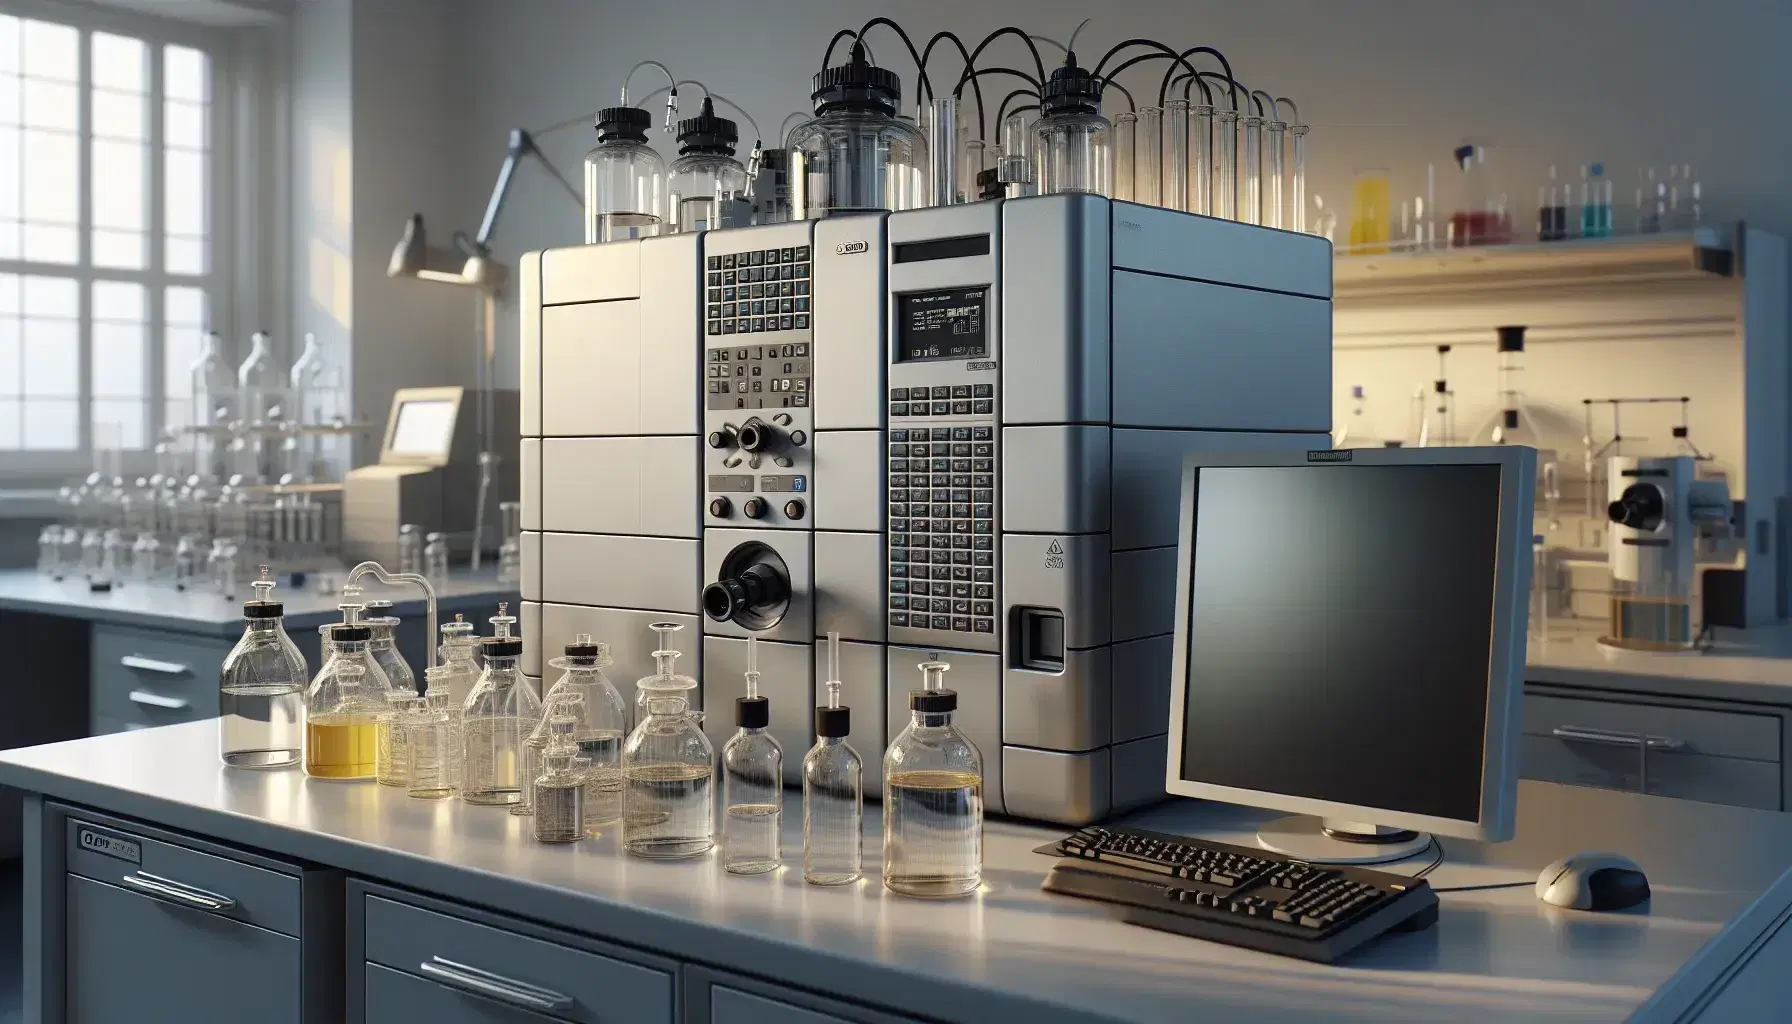 Espectrómetro de masas en laboratorio de química con frascos de vidrio y líquidos, junto a computadora apagada, reflejando tecnología avanzada y precisión científica.